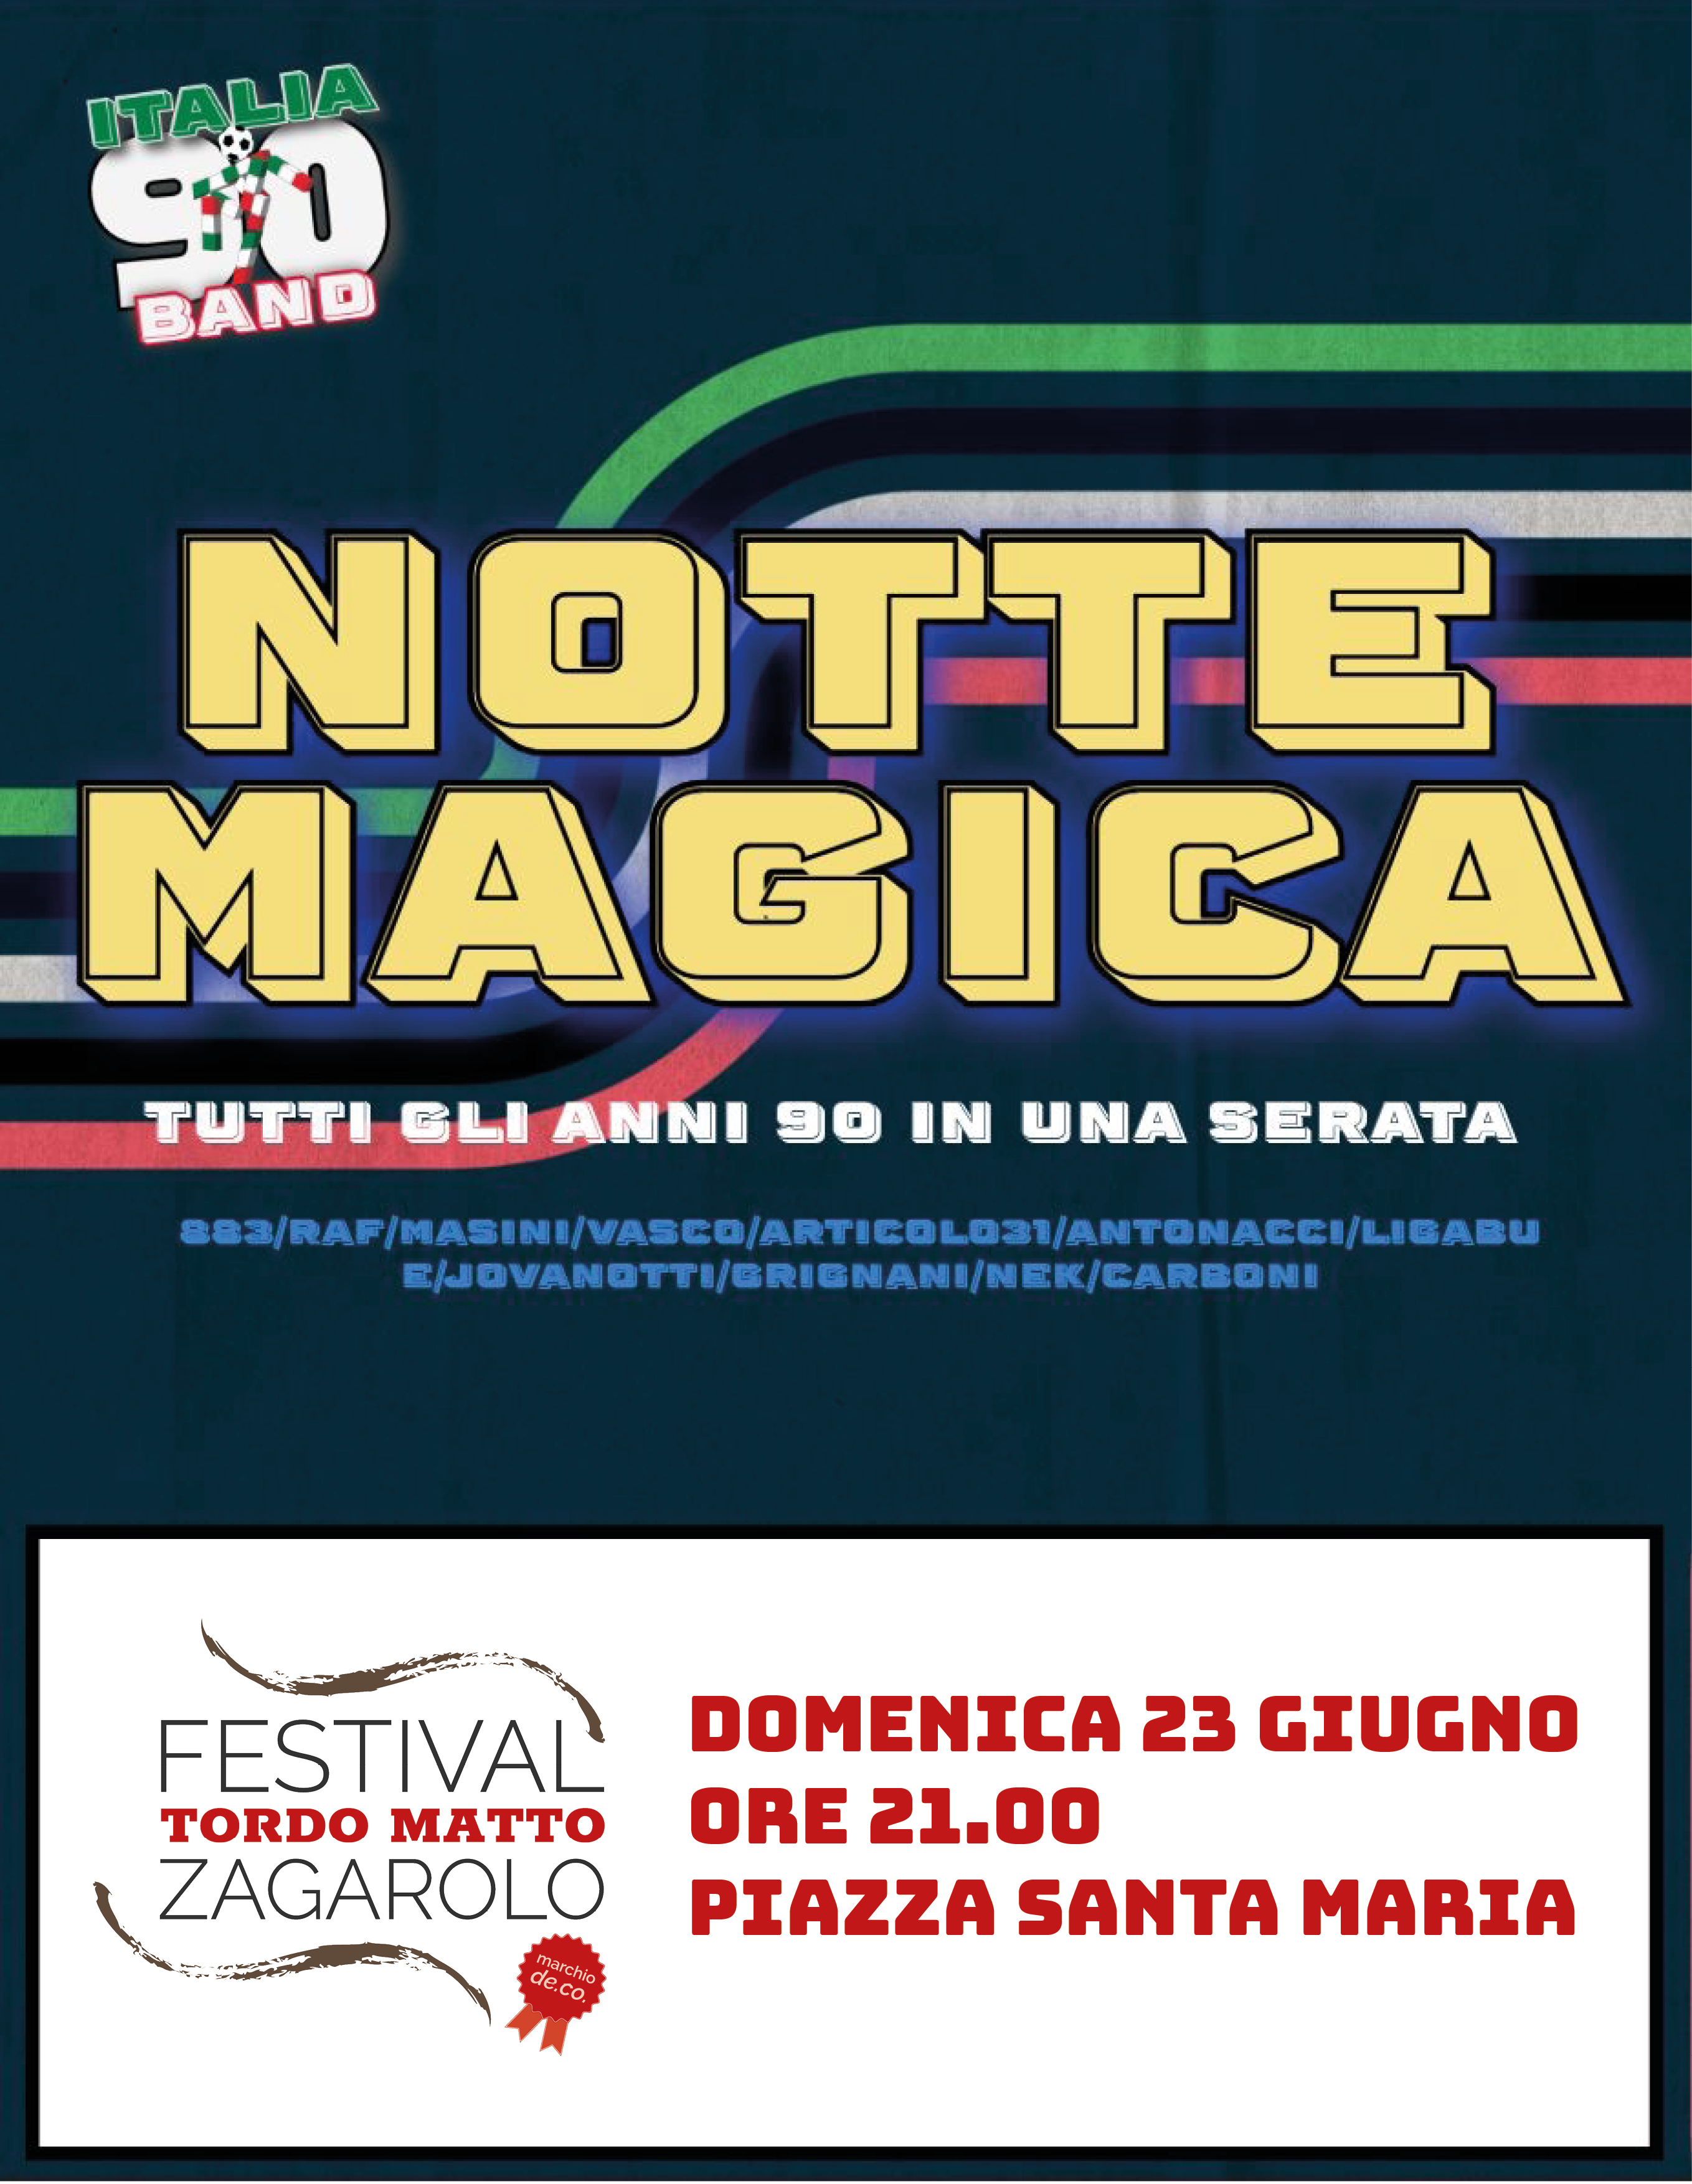 Concerto "Notte magica"